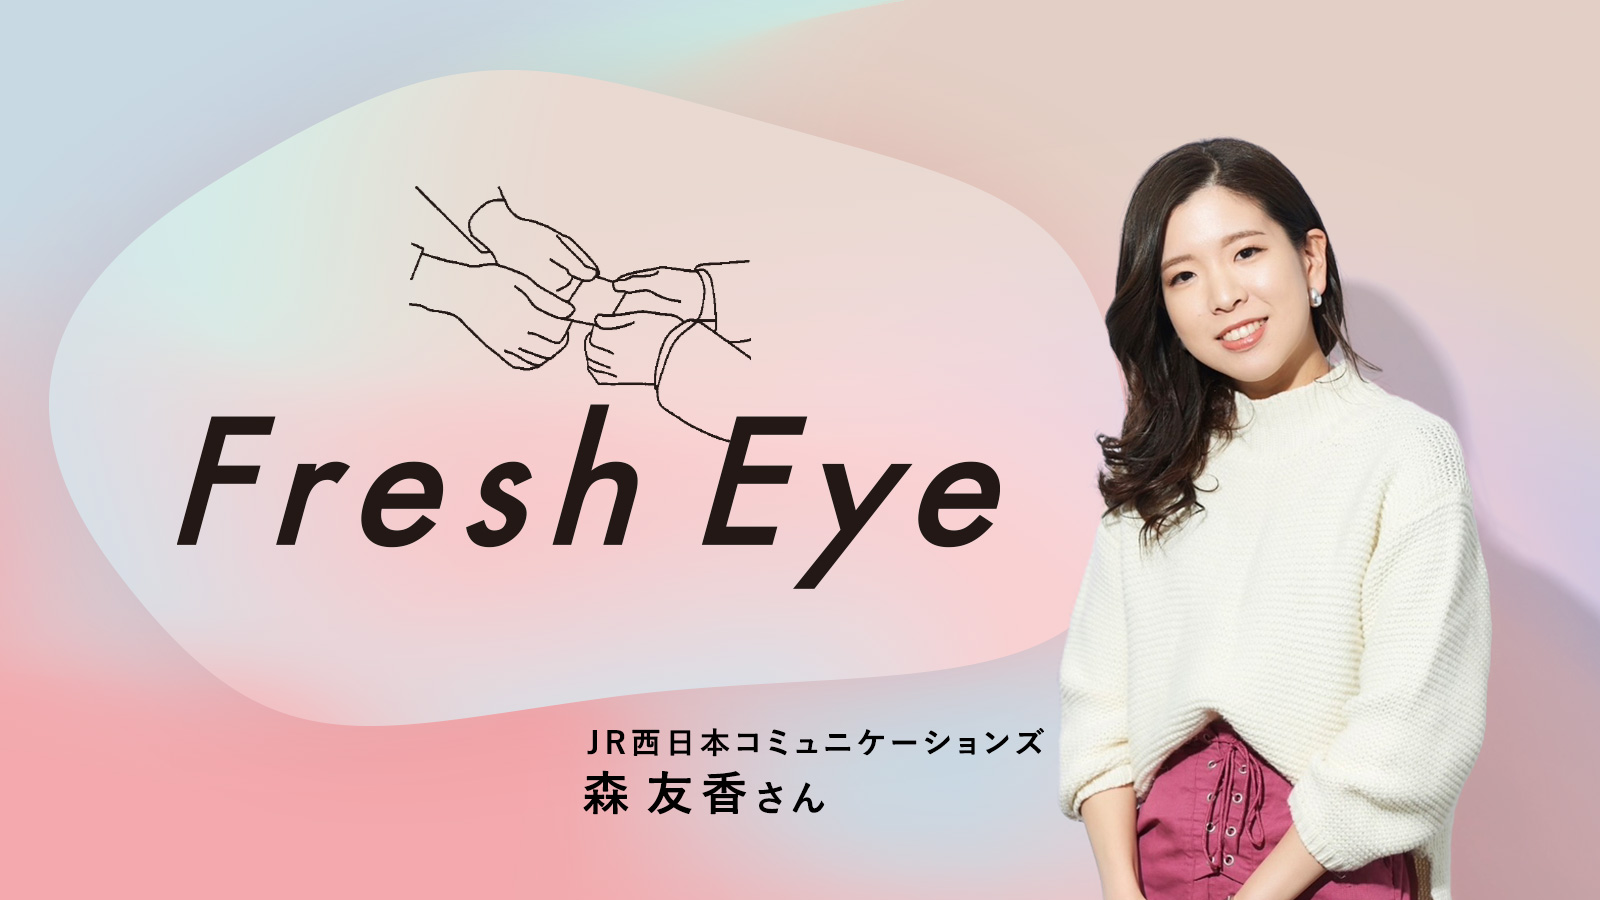 広告が果たせる地域共創ビジネス／JR西日本コミュニケーションズ 森友香さん〈Fresh Eye〉